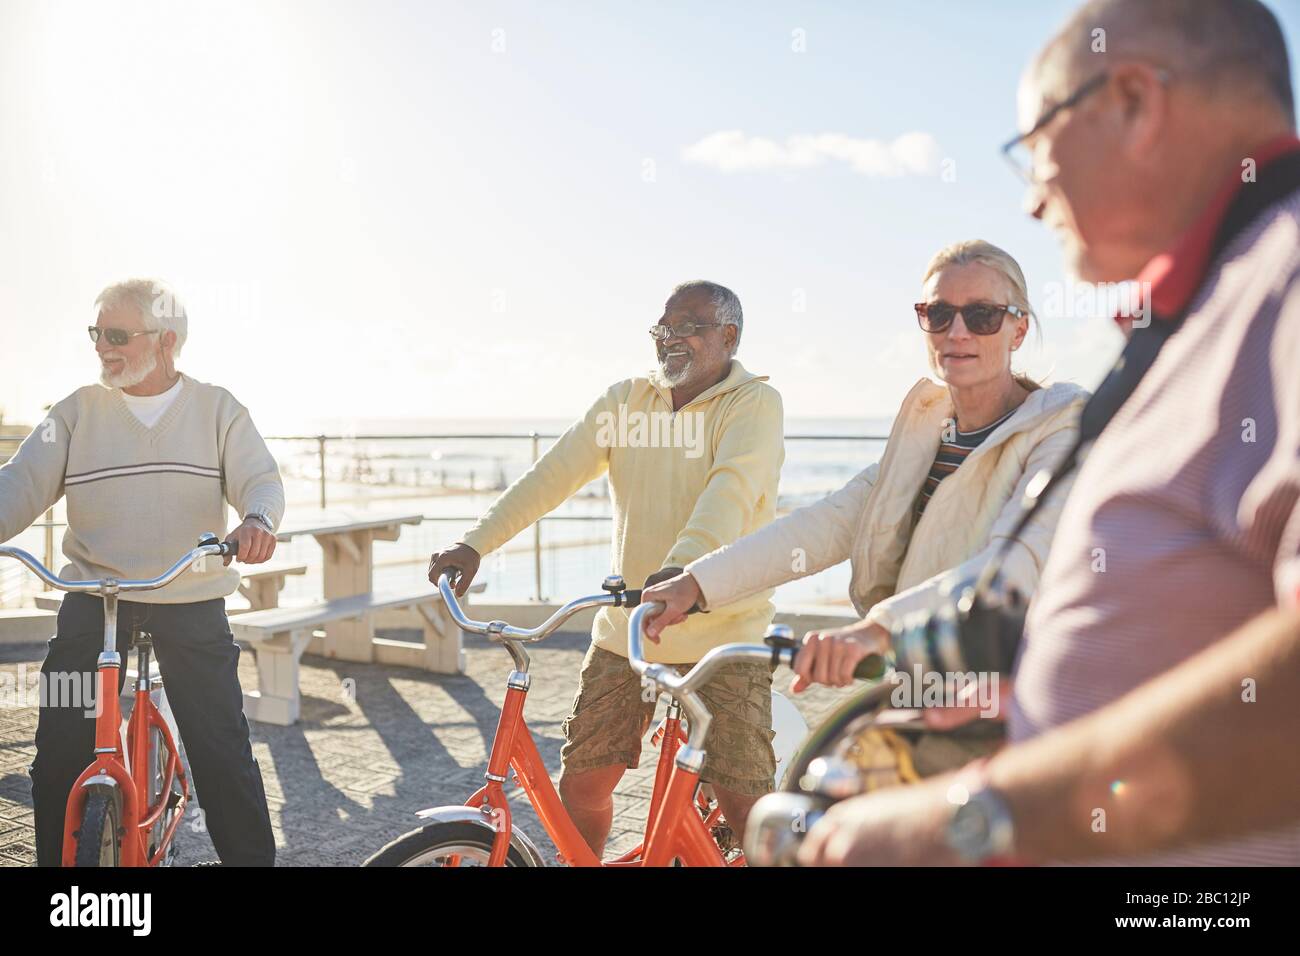 Aktive Senioren fahren auf sonnigen Spazierwegen mit dem Fahrrad Stockfoto